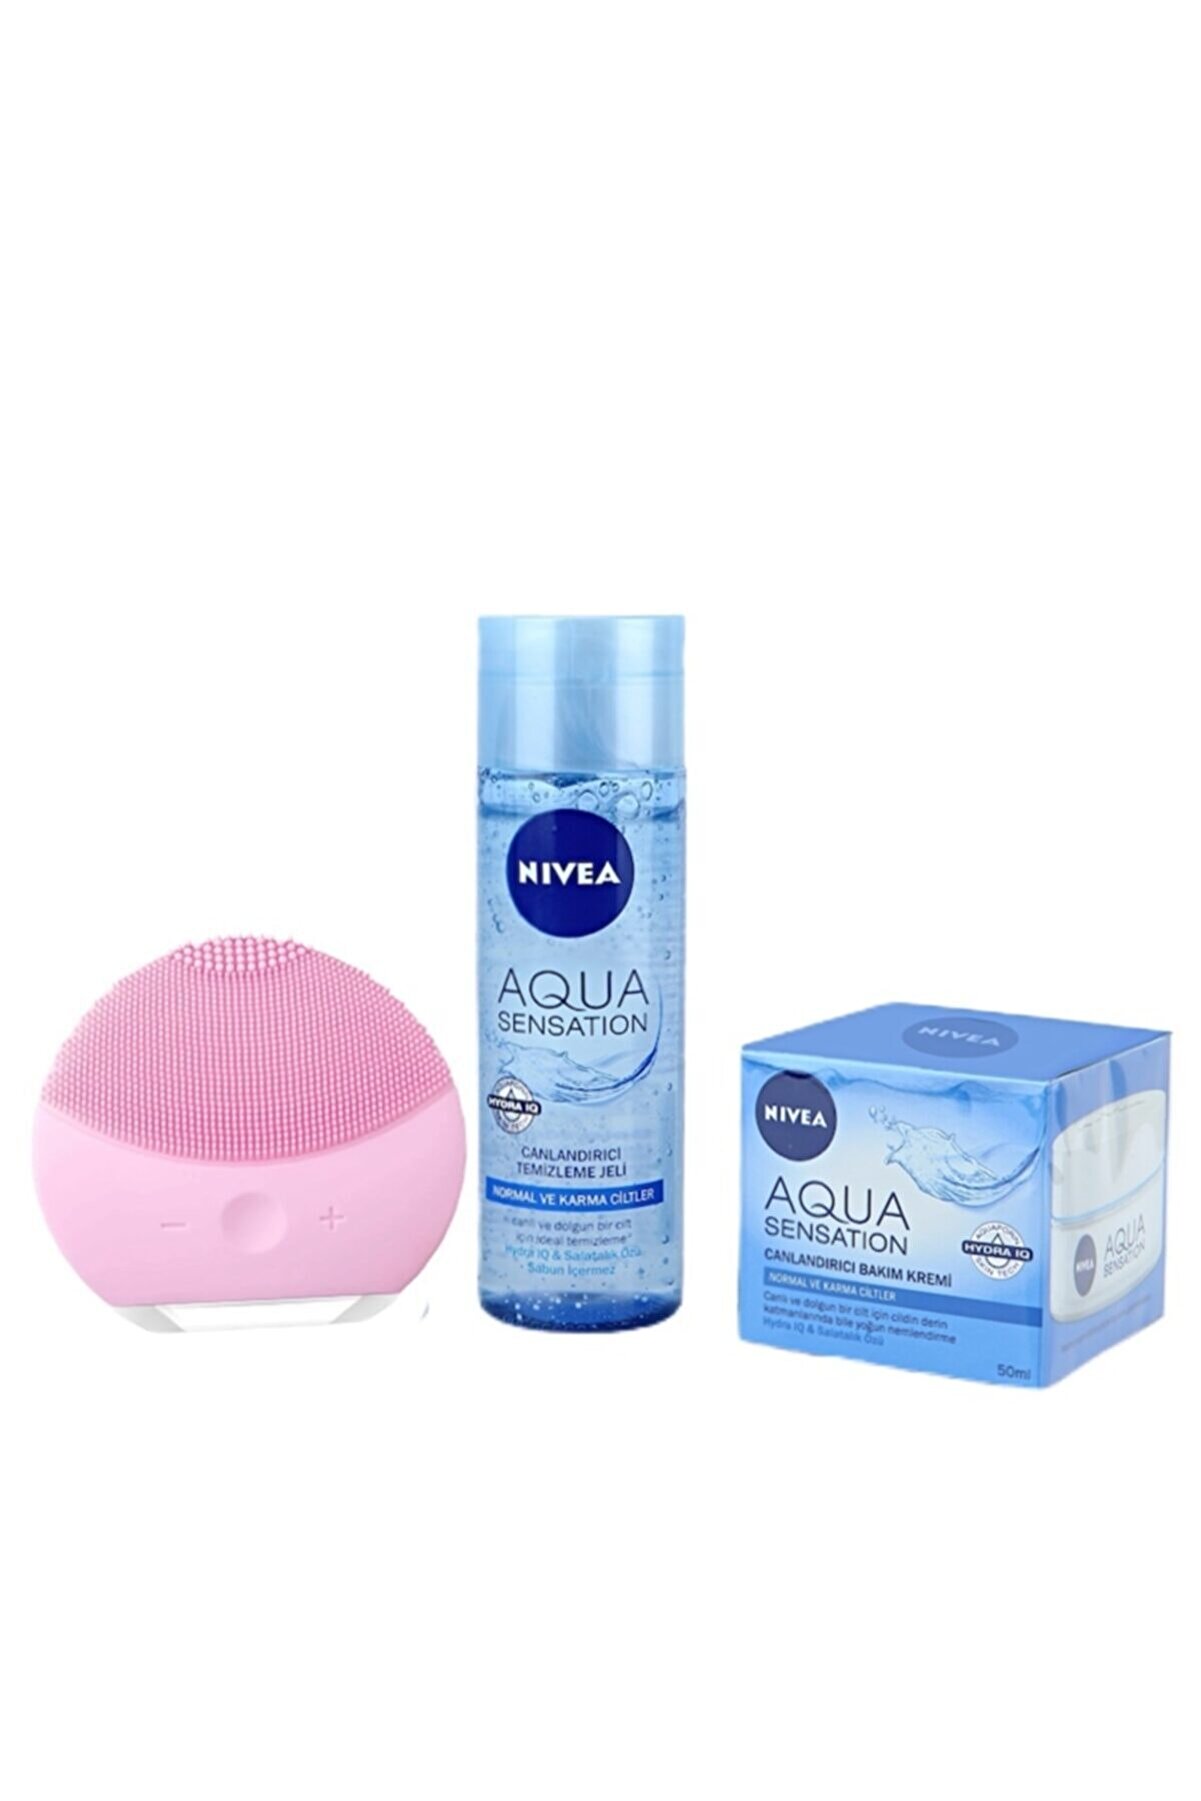 NIVEA Aqua Sensation Yüz Temizleme Jeli 200 ml + Bakım Kremi 50 ml + Şarjlı Yüz Temizleme Cihazı